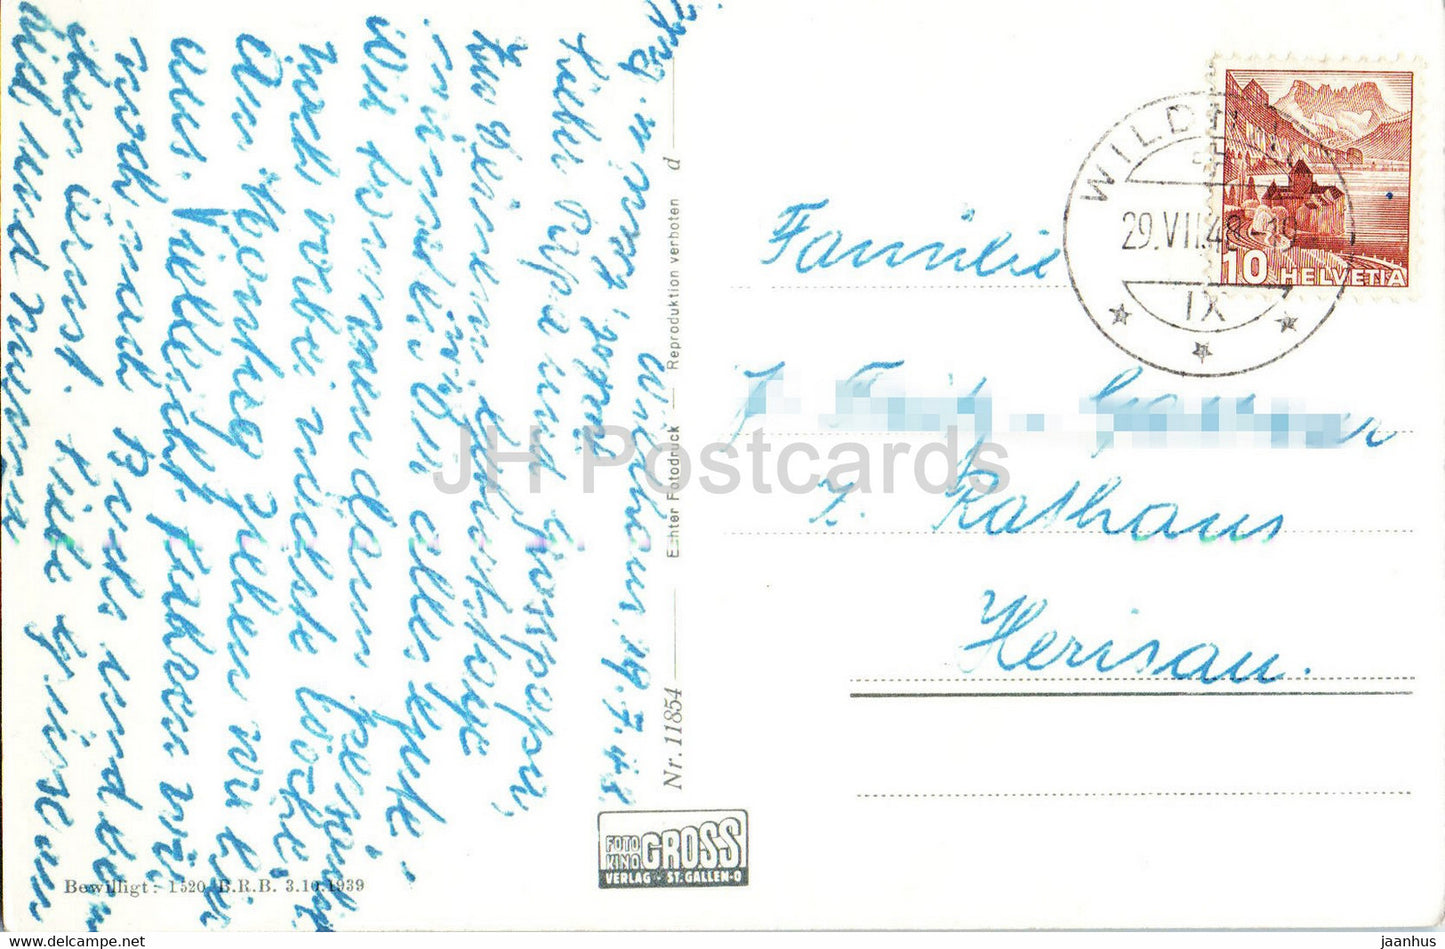 Santis mit Schafberg vom Aelpli Togg aus Abendstimmung - 11854 - 1948 - alte Postkarte - Schweiz - gebraucht